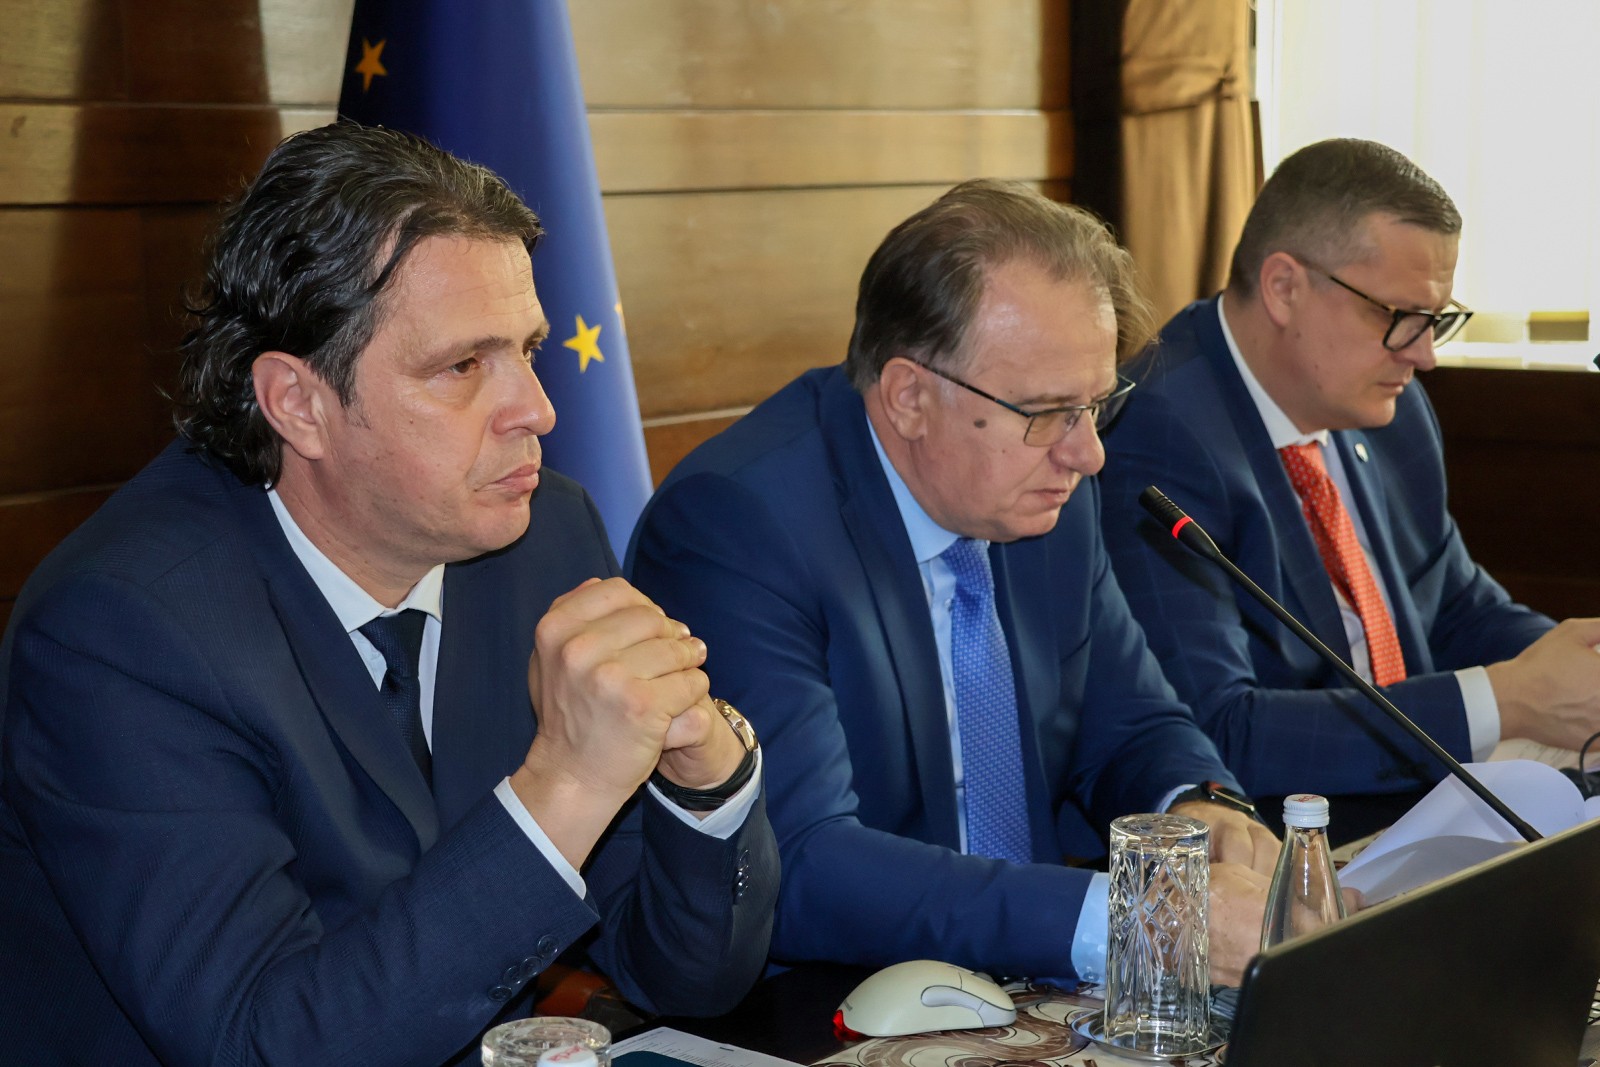 Усвојена информација о подузетим активностима за учешће Федерације БиХ у иницијативи ЕУ комисије План раста за Западни Балкан